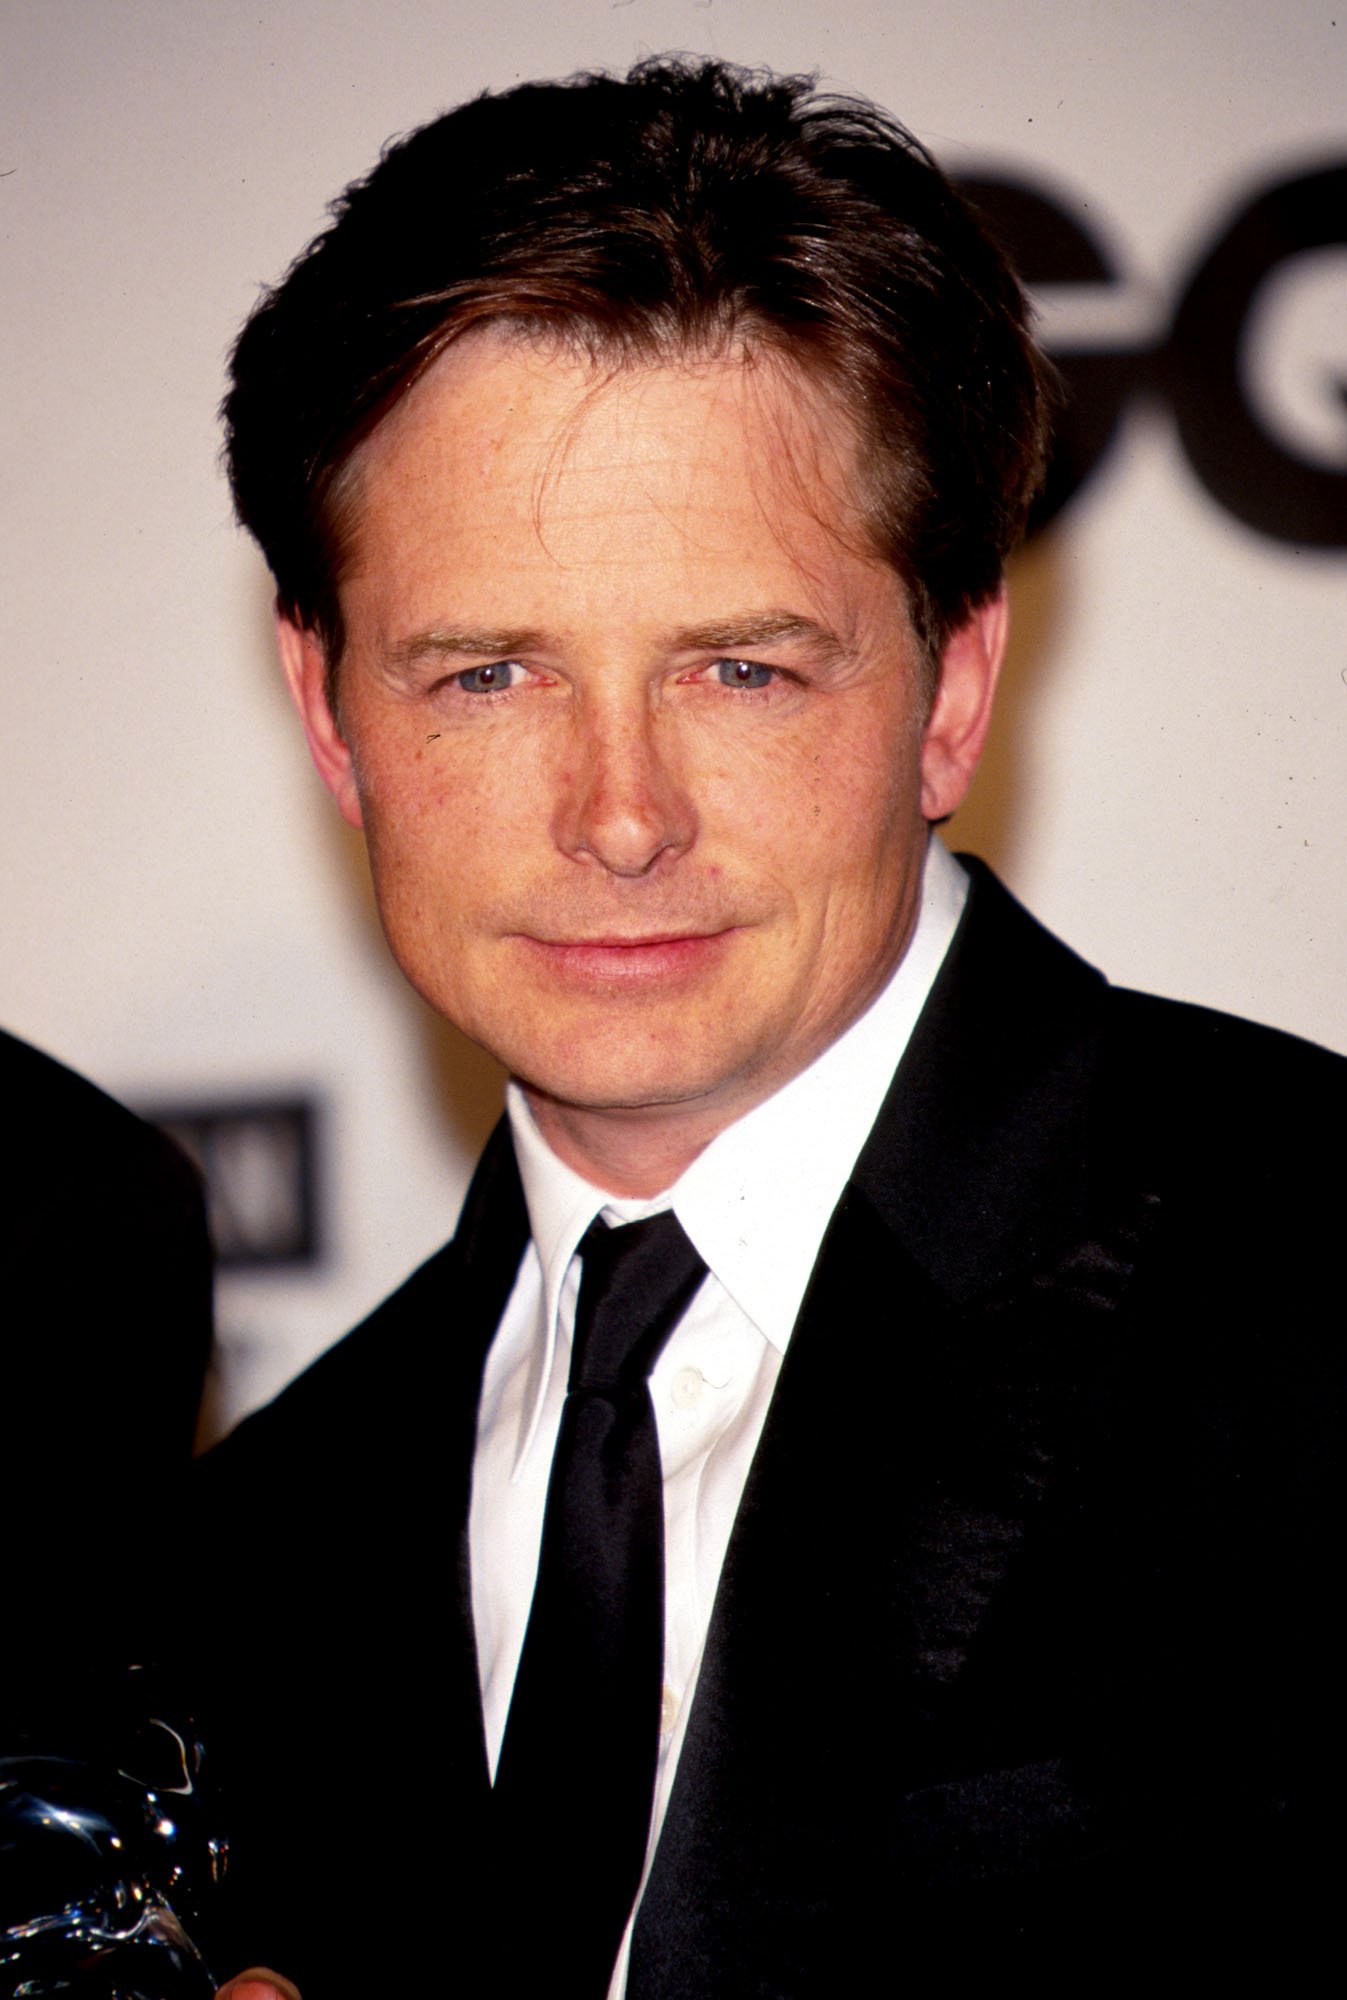 Michael J. Fox l Image: Getty Images